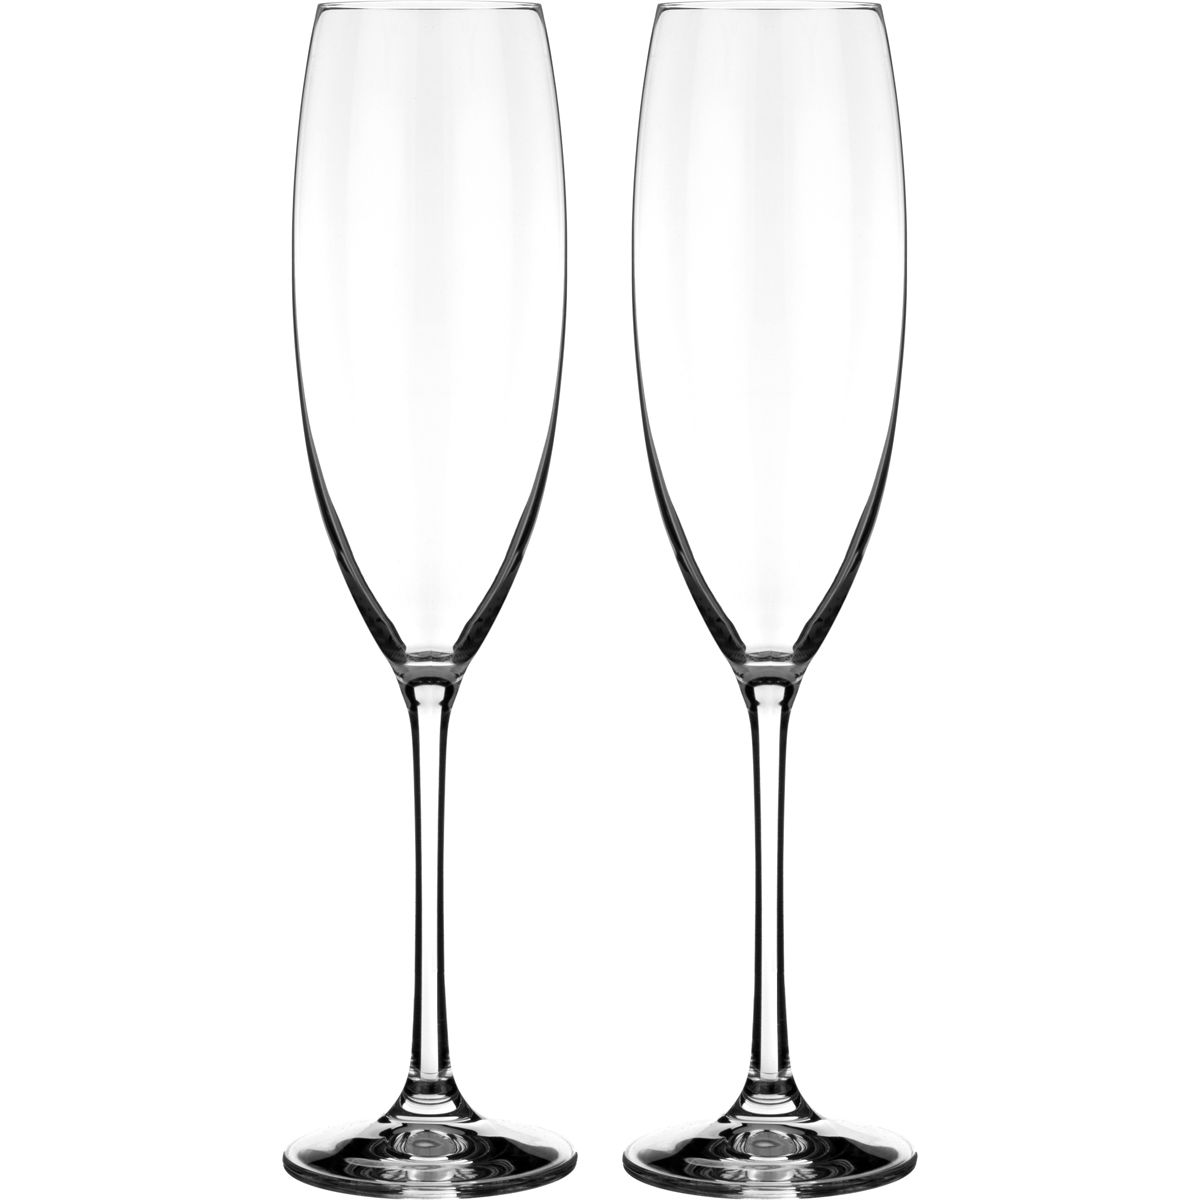 Набор бокалов для шампанского Grandioso (230 мл - 2 шт)